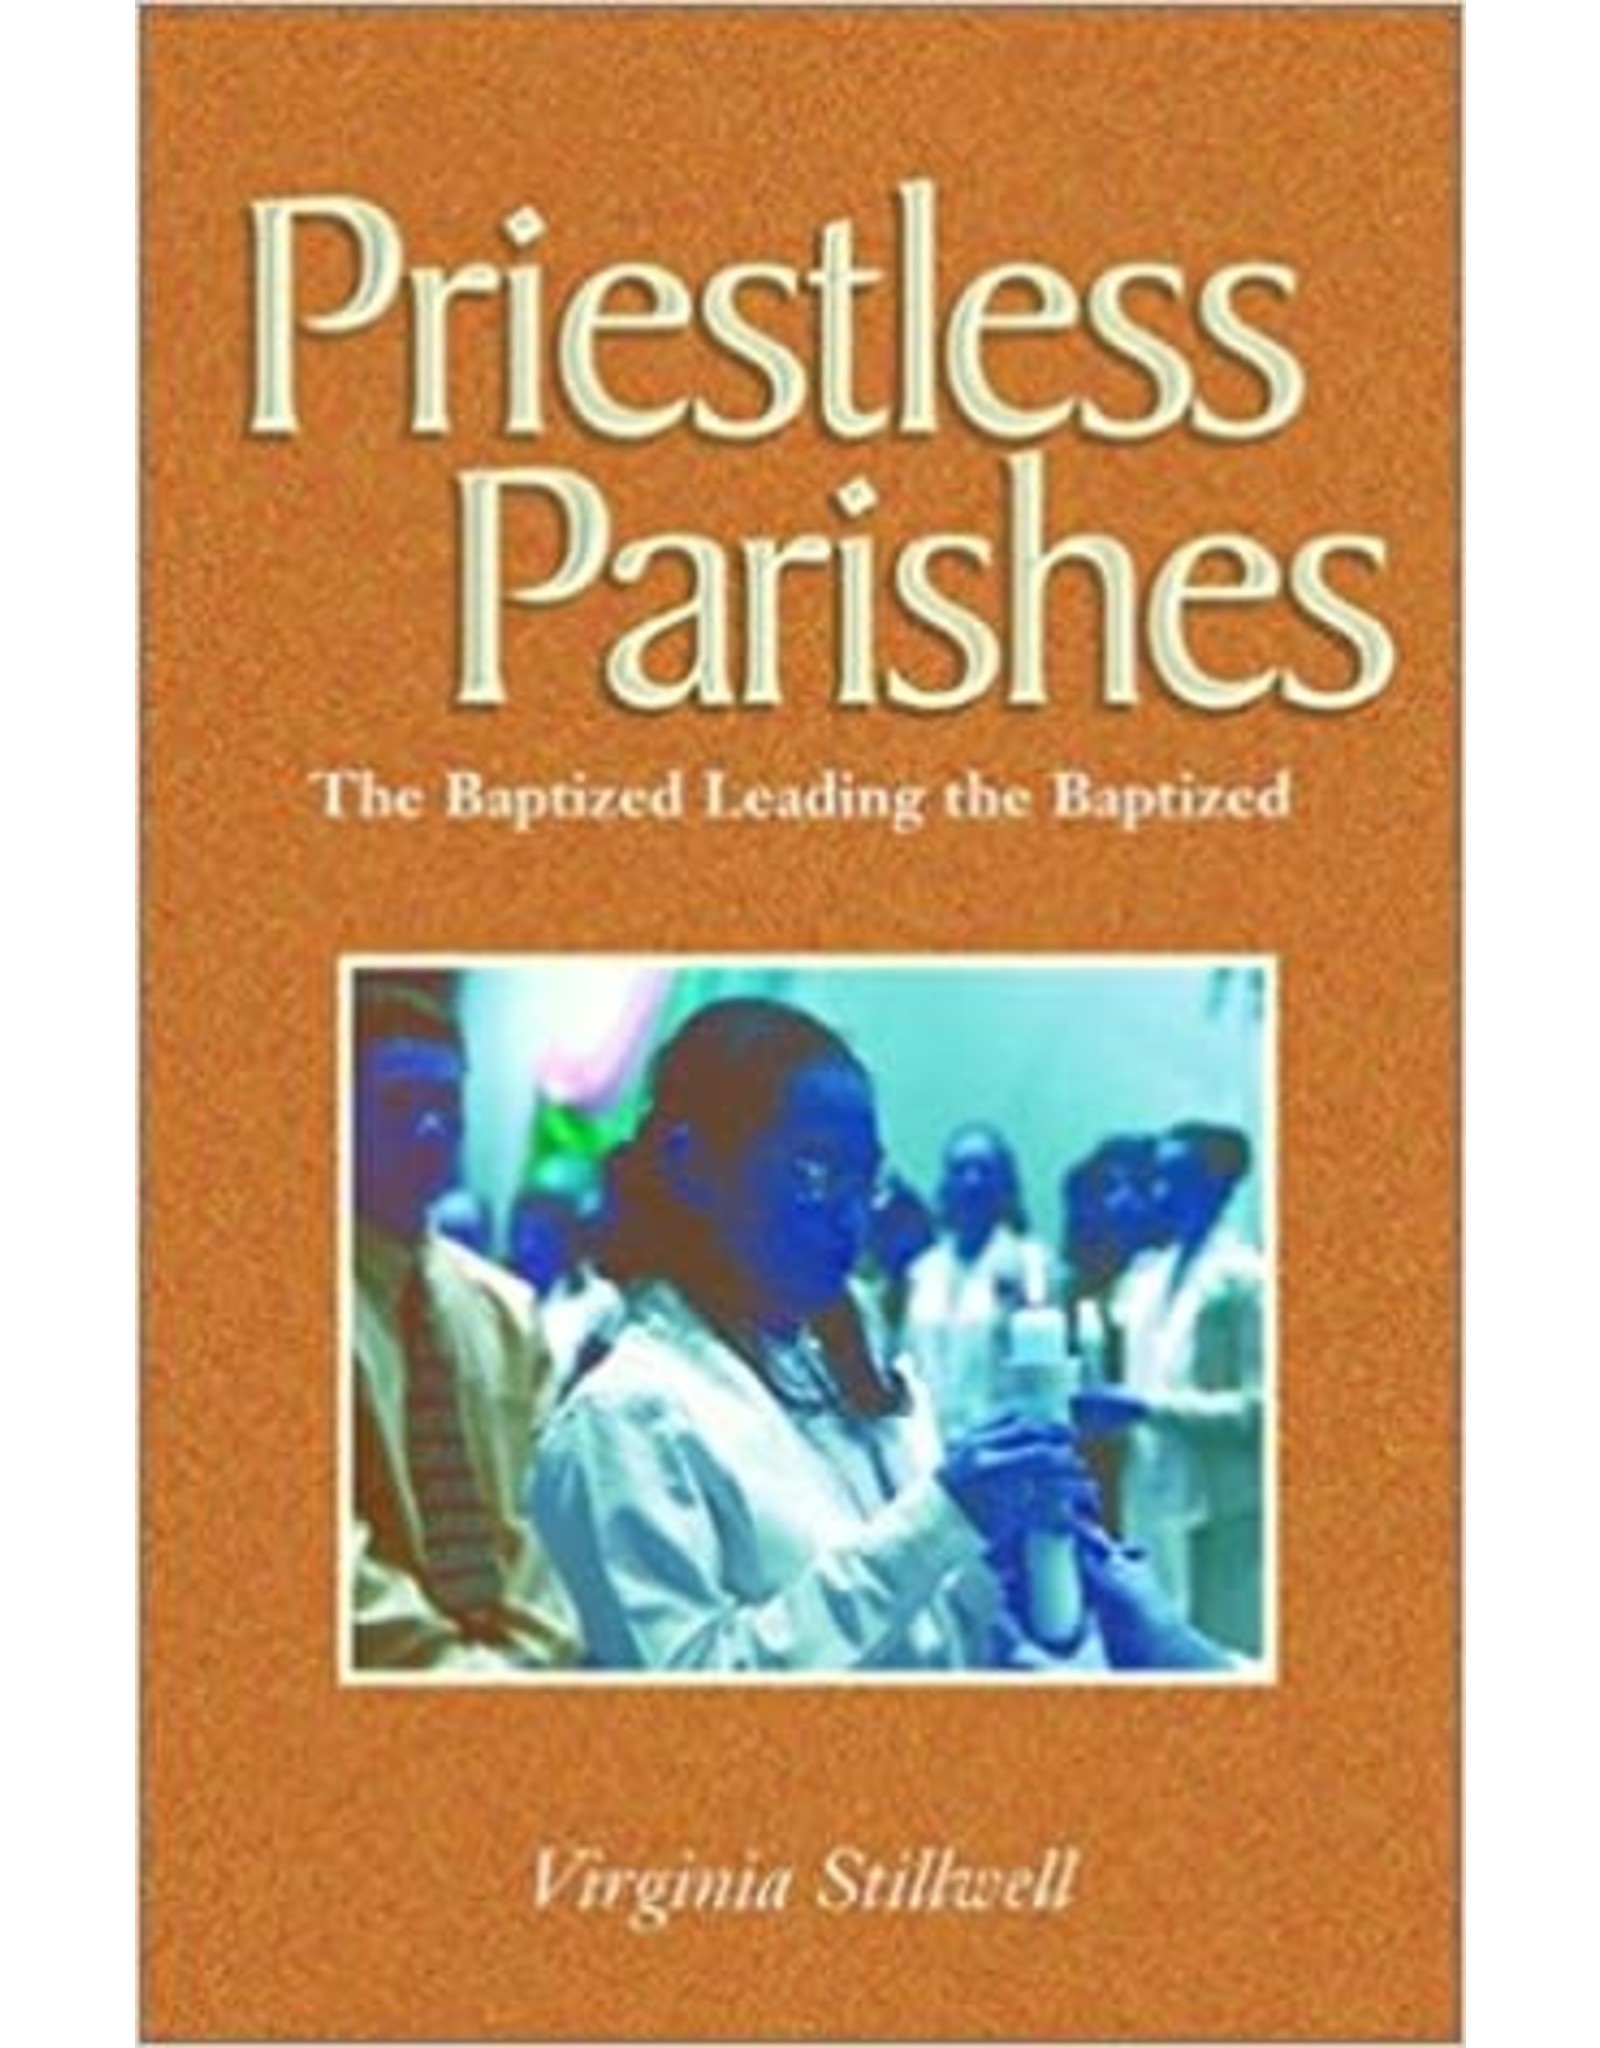 Priestless Parishes: The Baptized Leading the Baptized